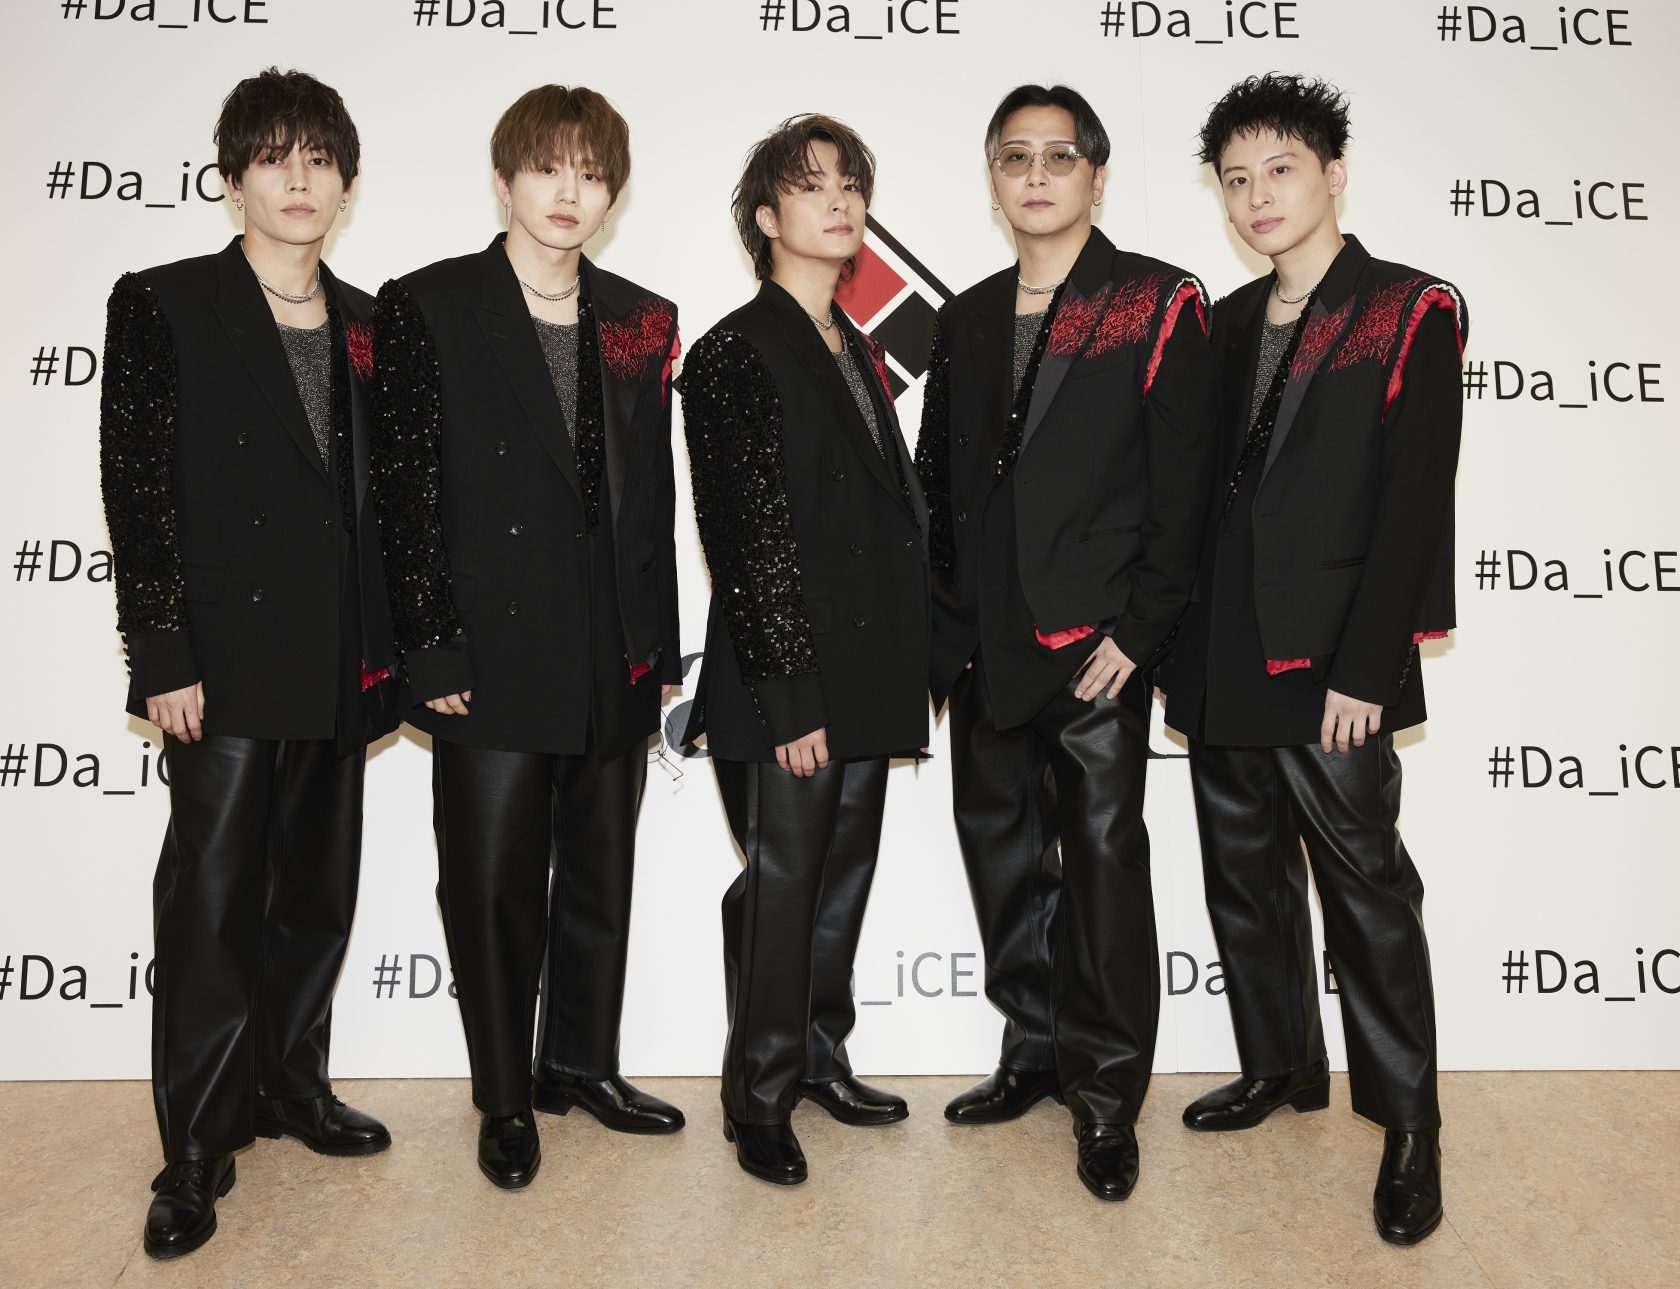 デビュー10周年ライブを日本武道館で行ったDa-iCE。（左から）岩岡徹、花村想太、和田颯、大野雄大、工藤大輝